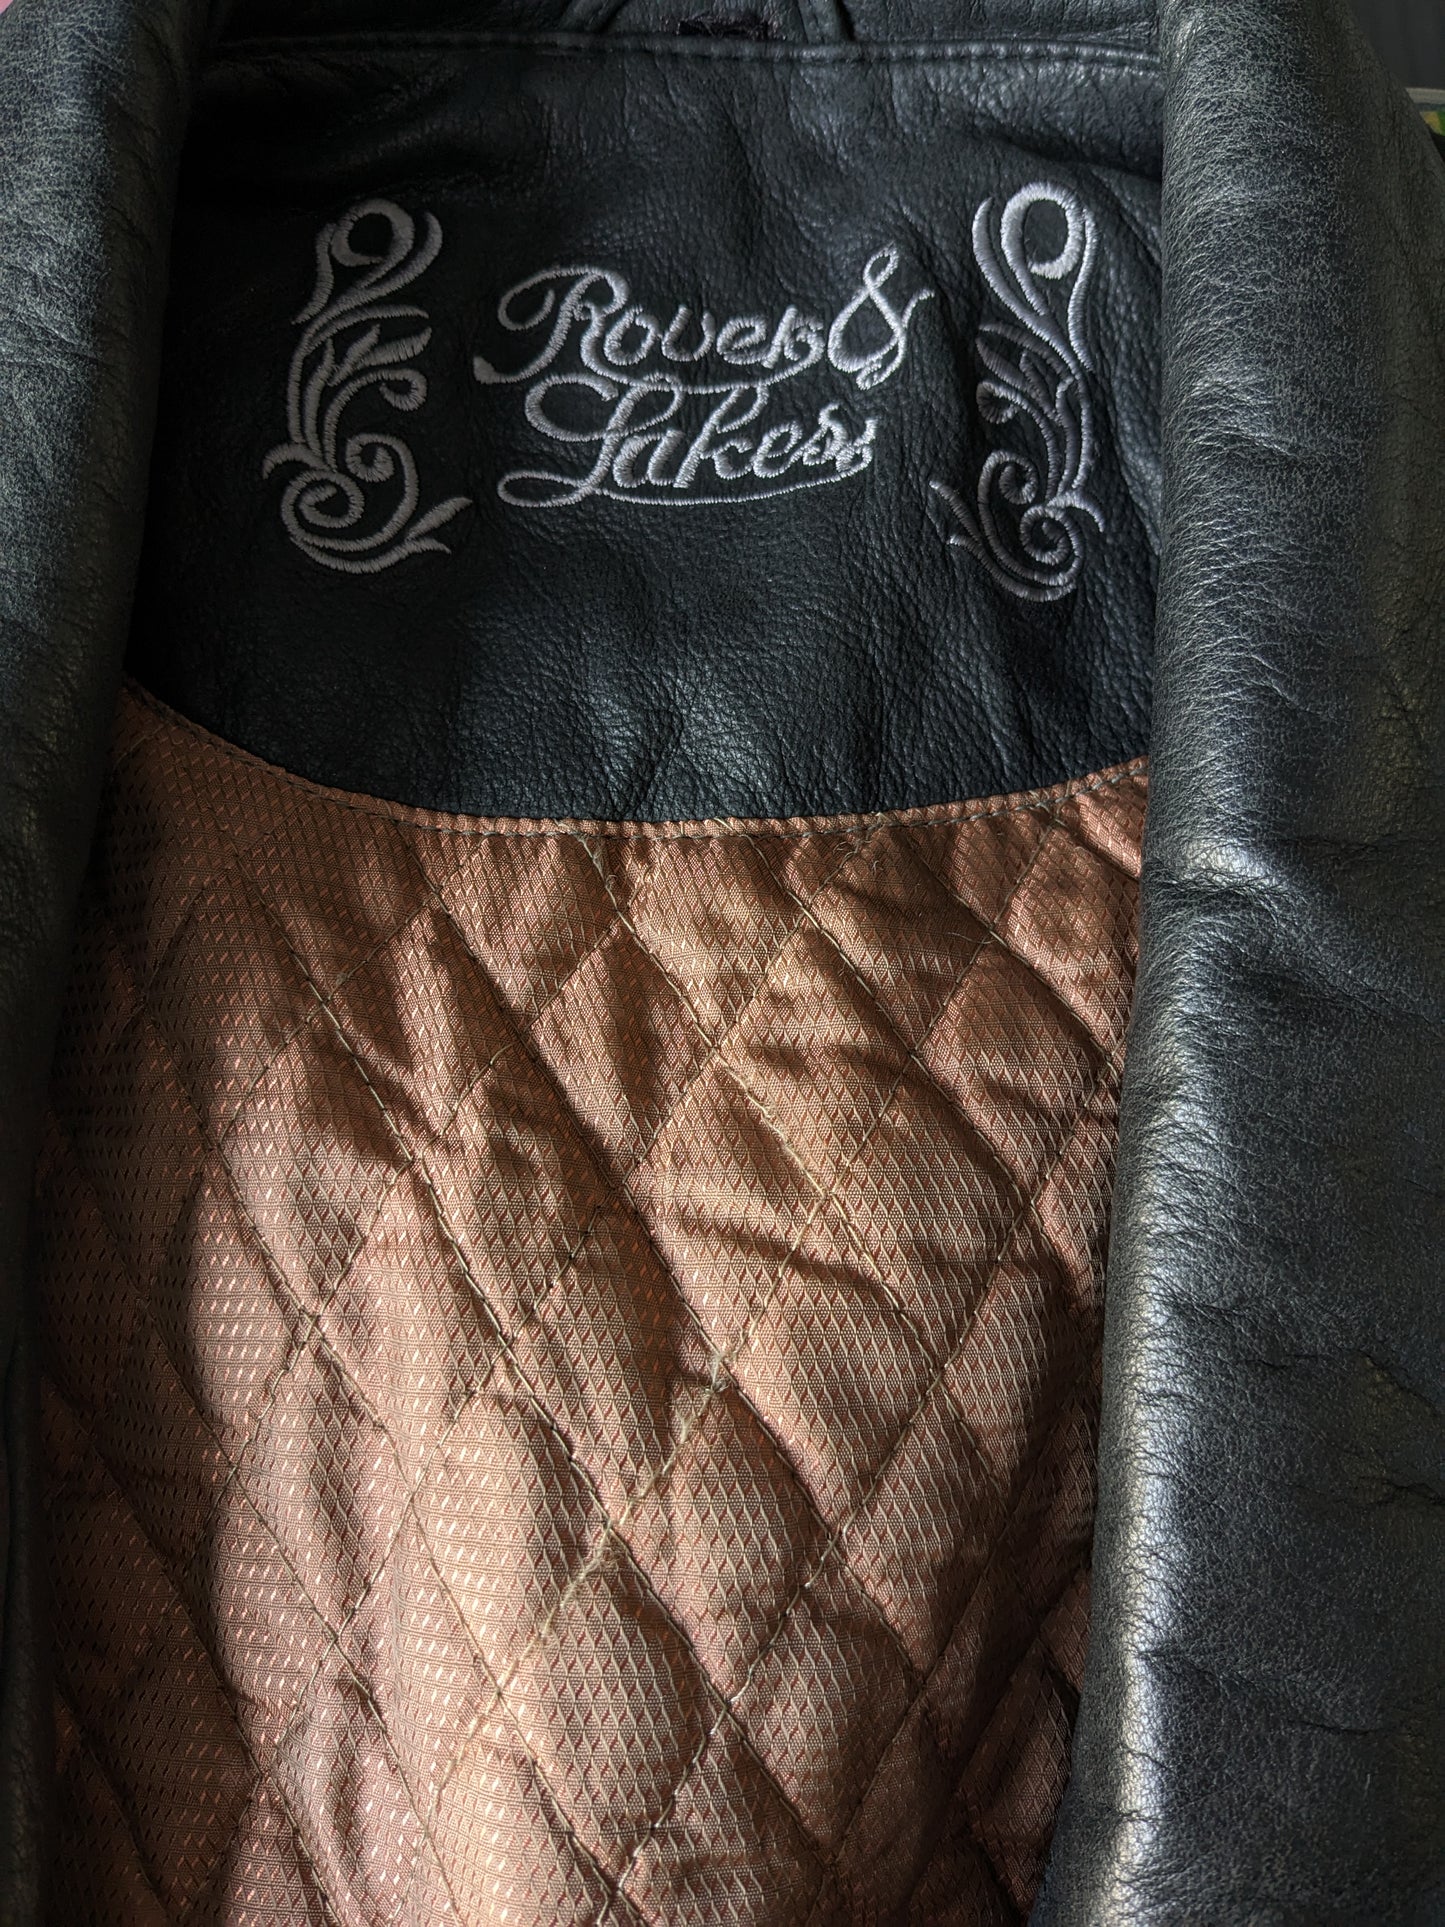 Vintage des années 80 - 90's Rover & Lakes apprend le corps du corps / gilet. Beaucoup de sacs, 2 poches intérieures et légèrement doublés. Marron noir. Taille xl.